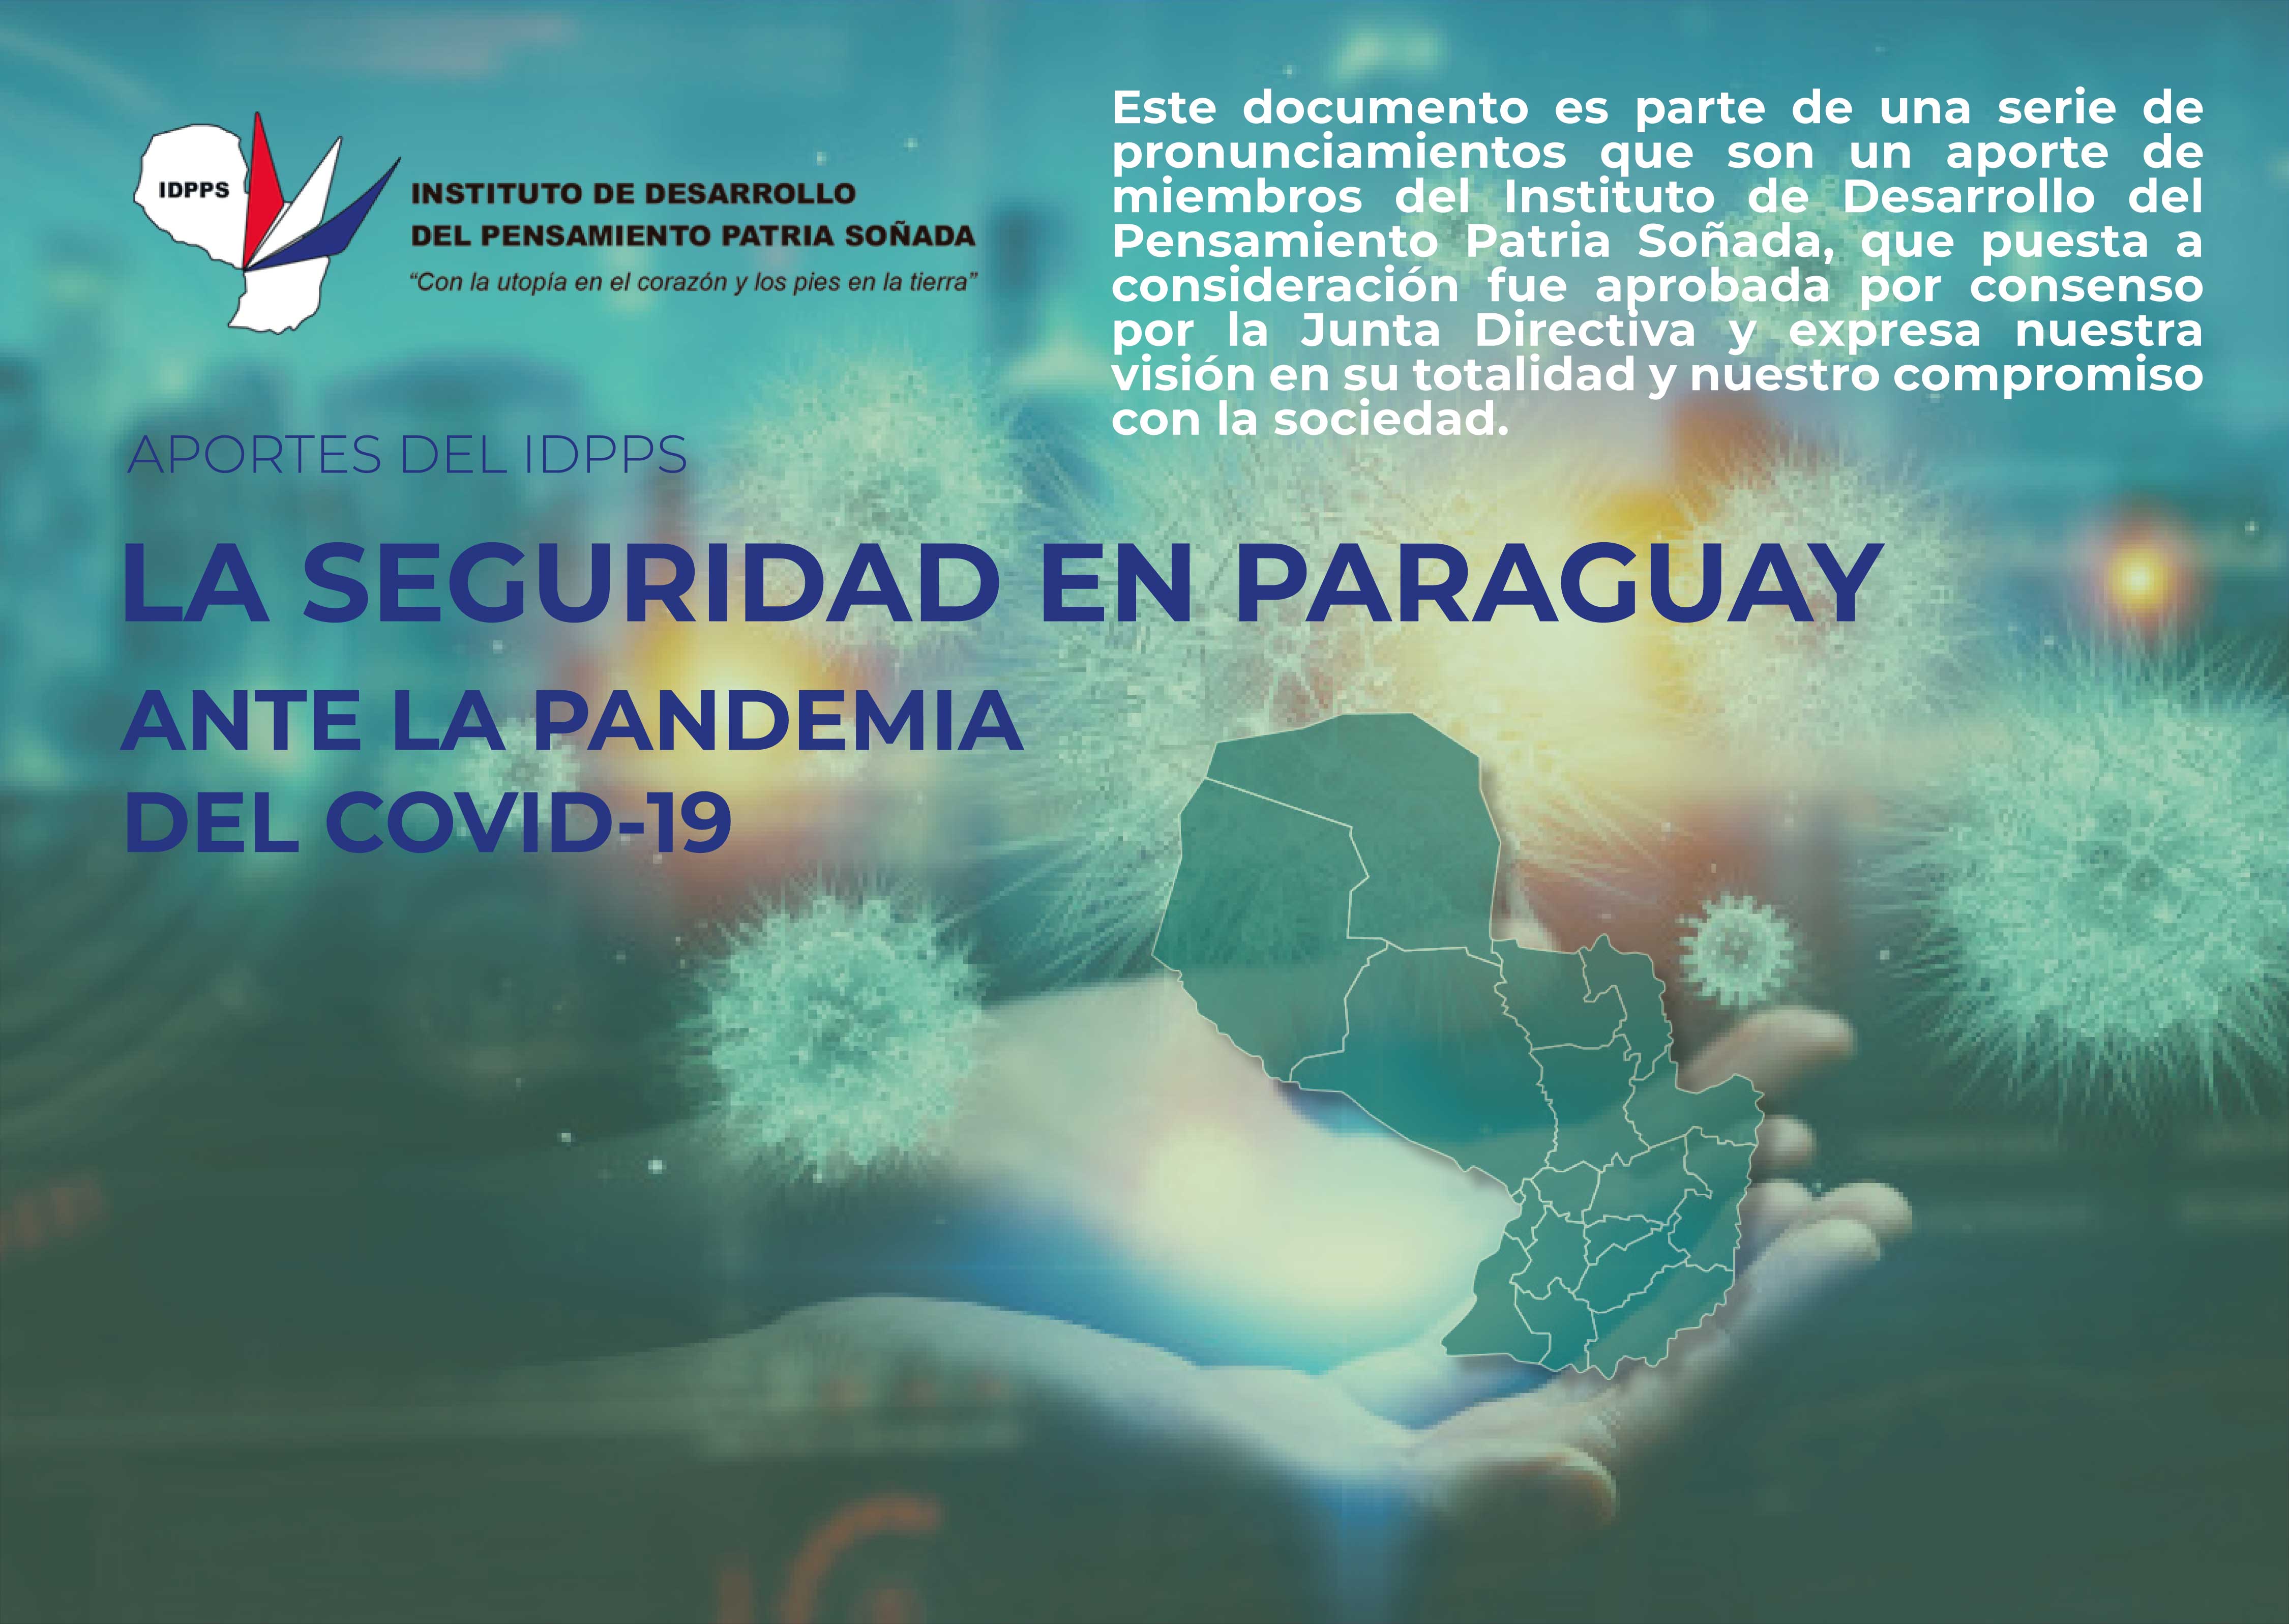 La Seguridad en Paraguay ante la pandemia del Covid-19